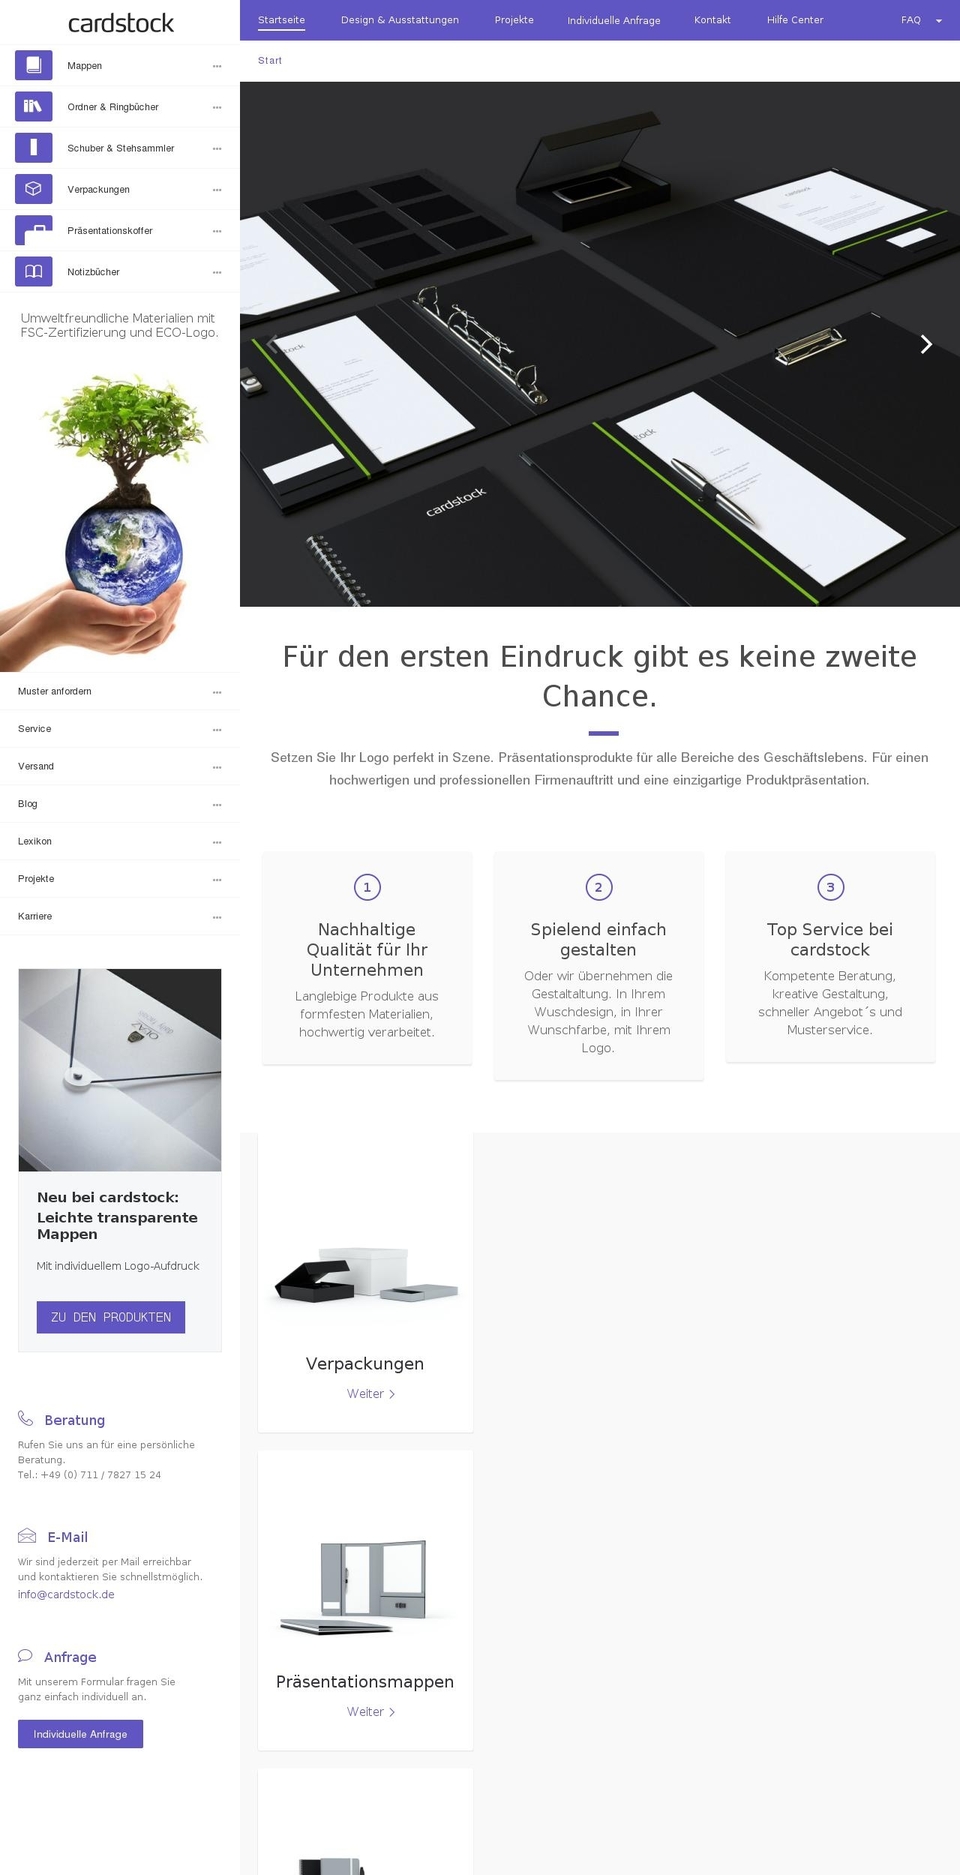 cardstock.de shopify website screenshot